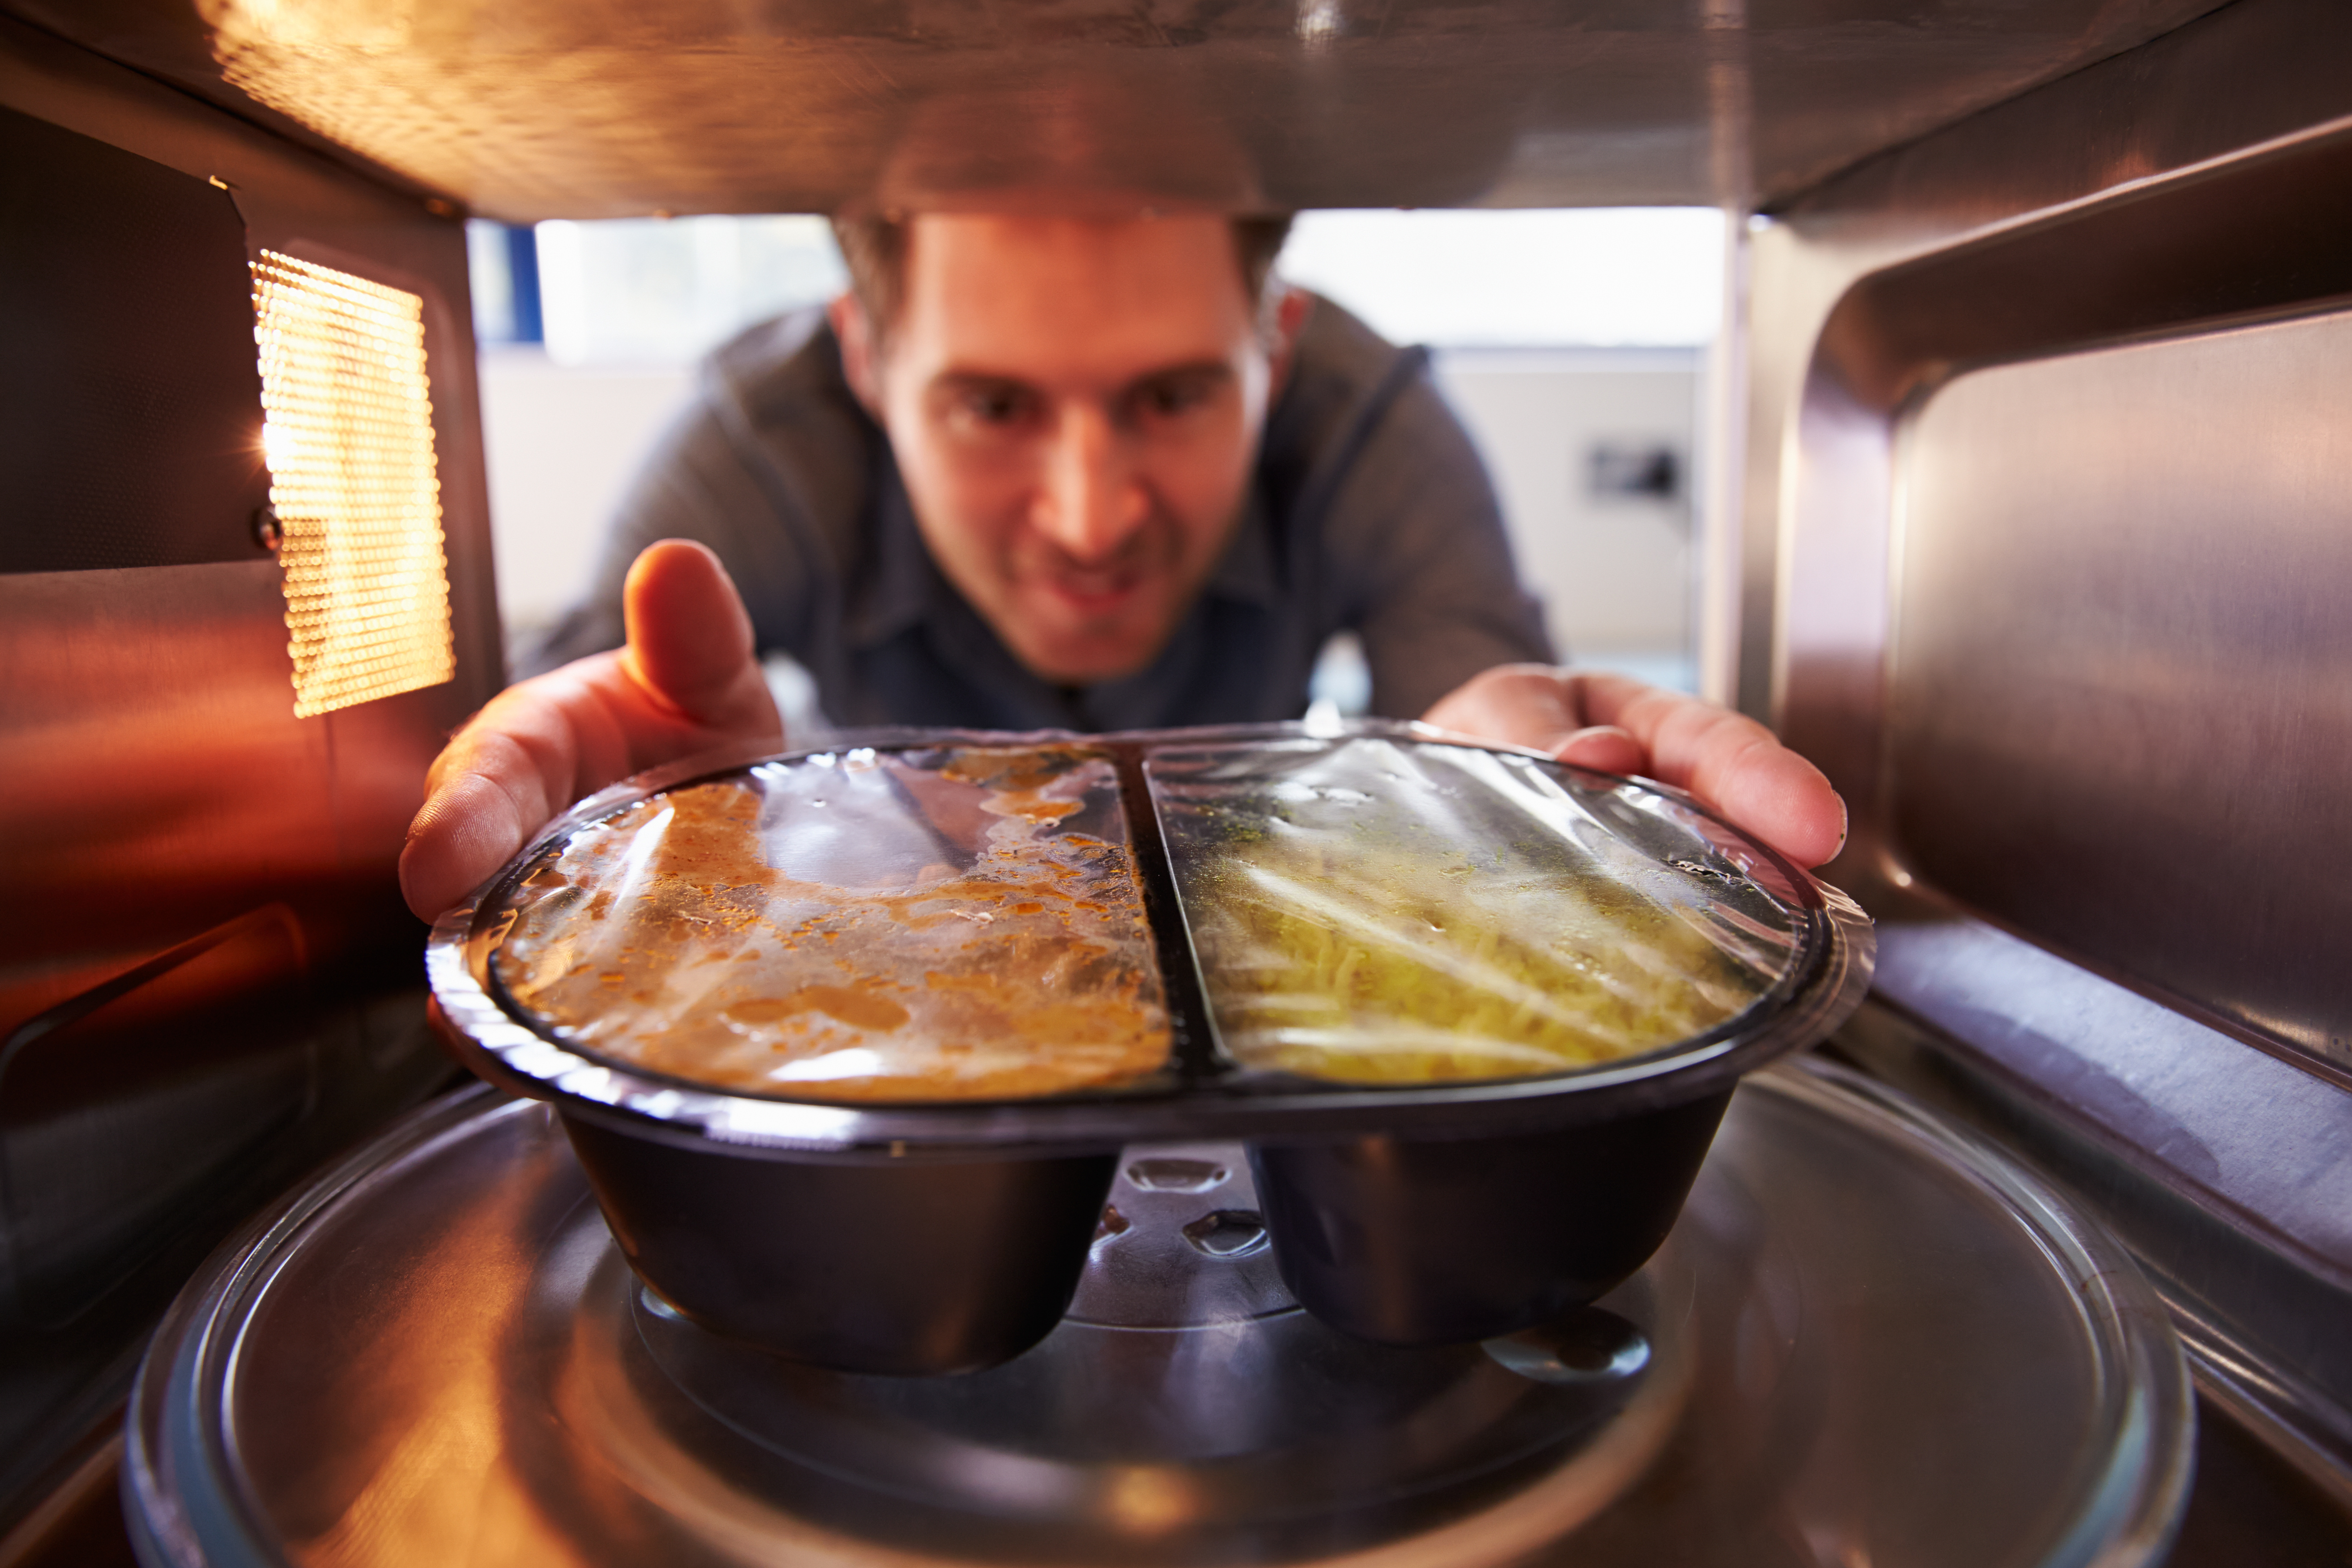 Для пищи свч. Еда из микроволновки. Разогреть еду в микроволновке. Микроволновая печь с едой. Подогревание пищи.